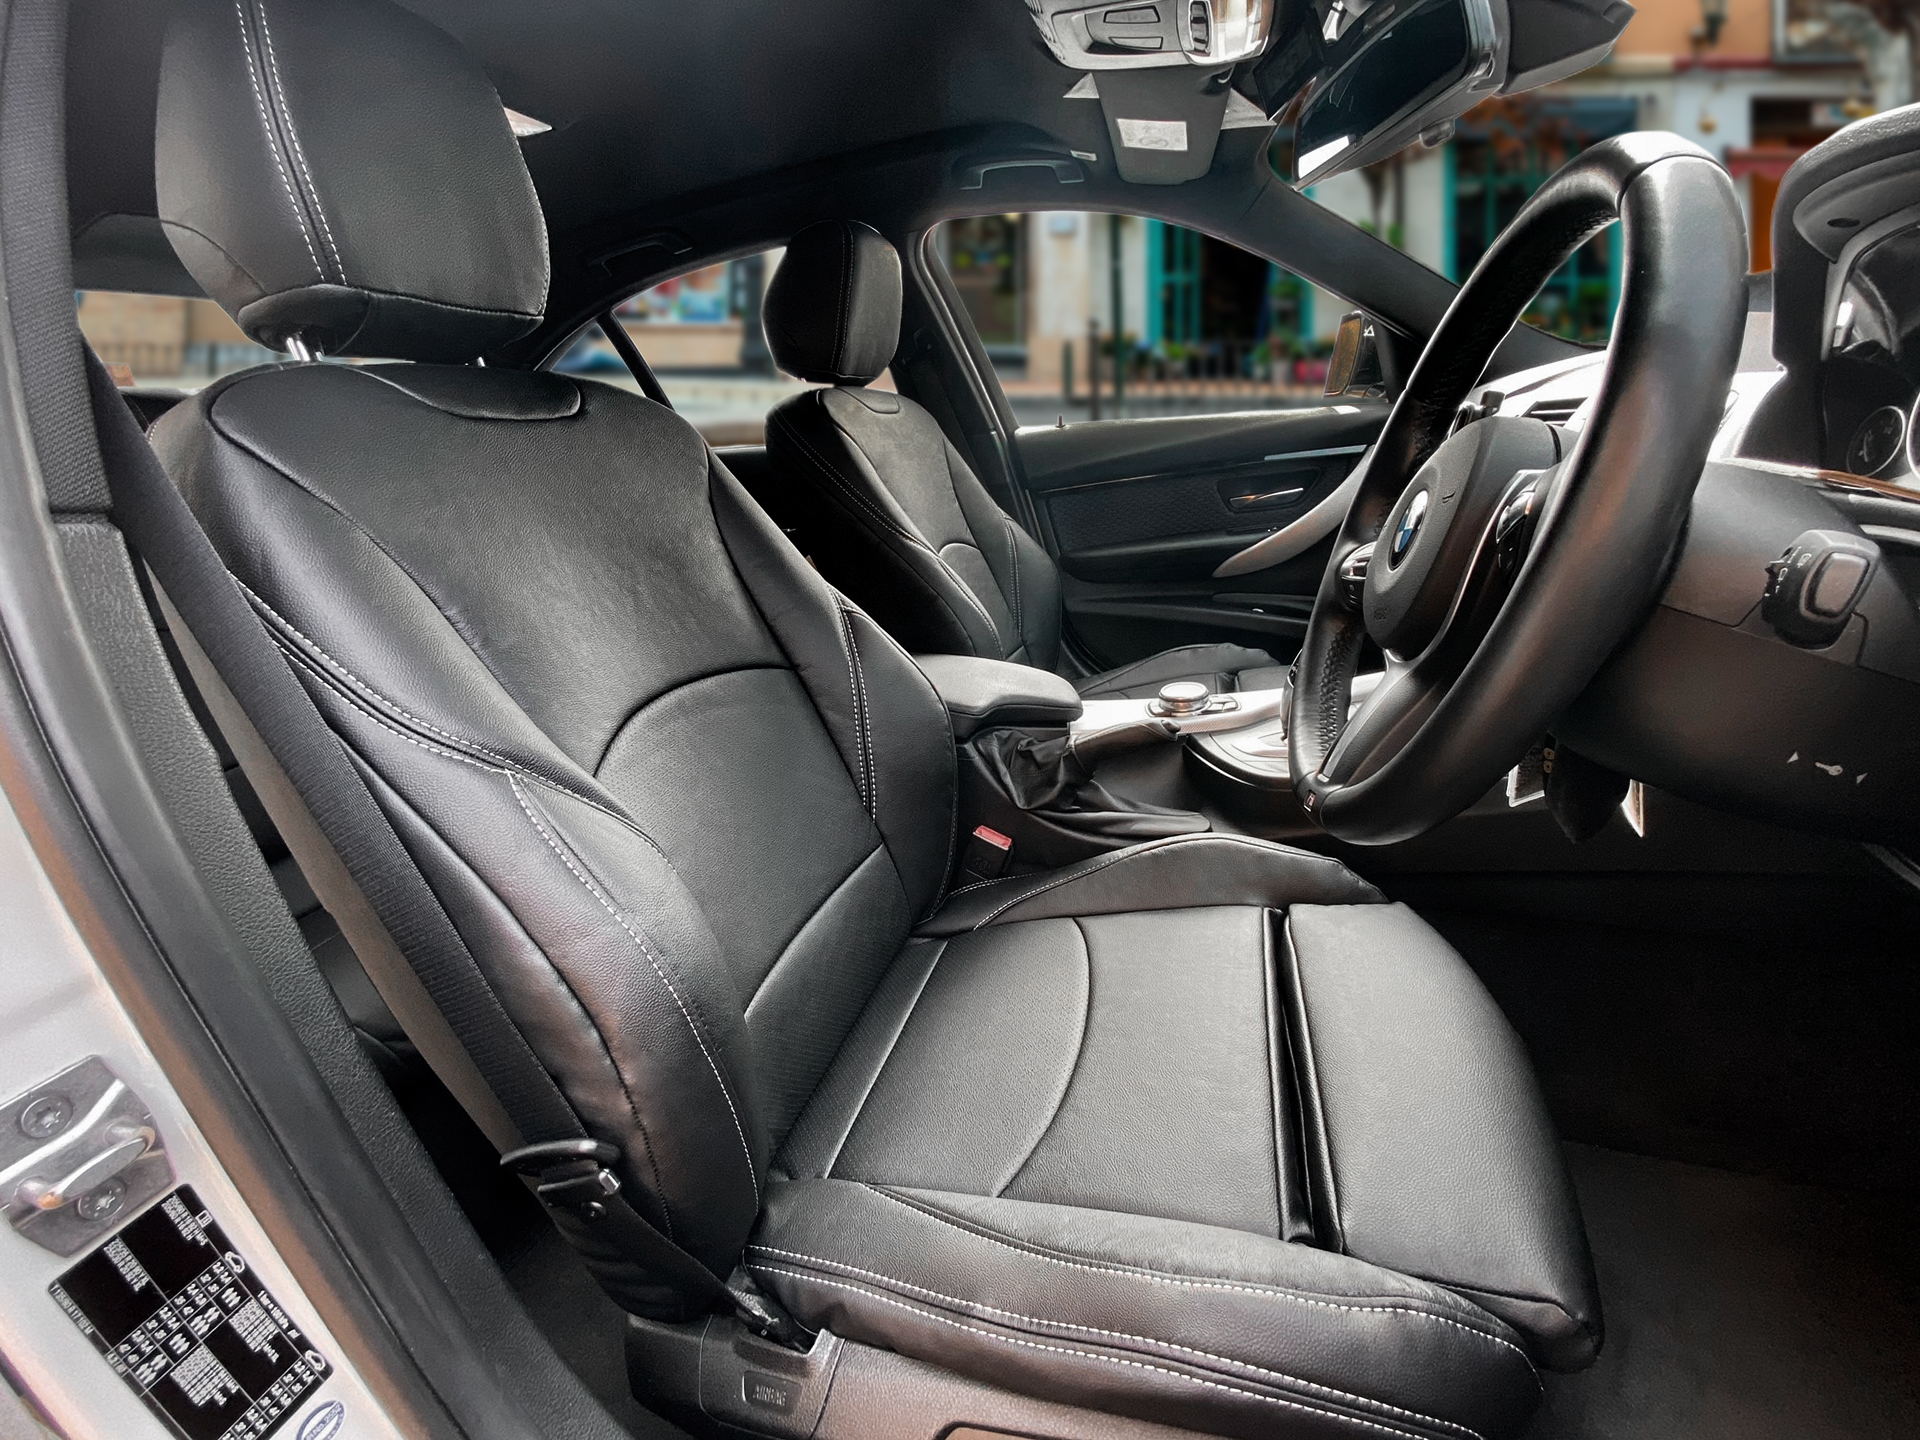 【装着写真】BMW 3シリーズ Refinad Leather Deluxe Series シートカバー [品番:BM0189-15]